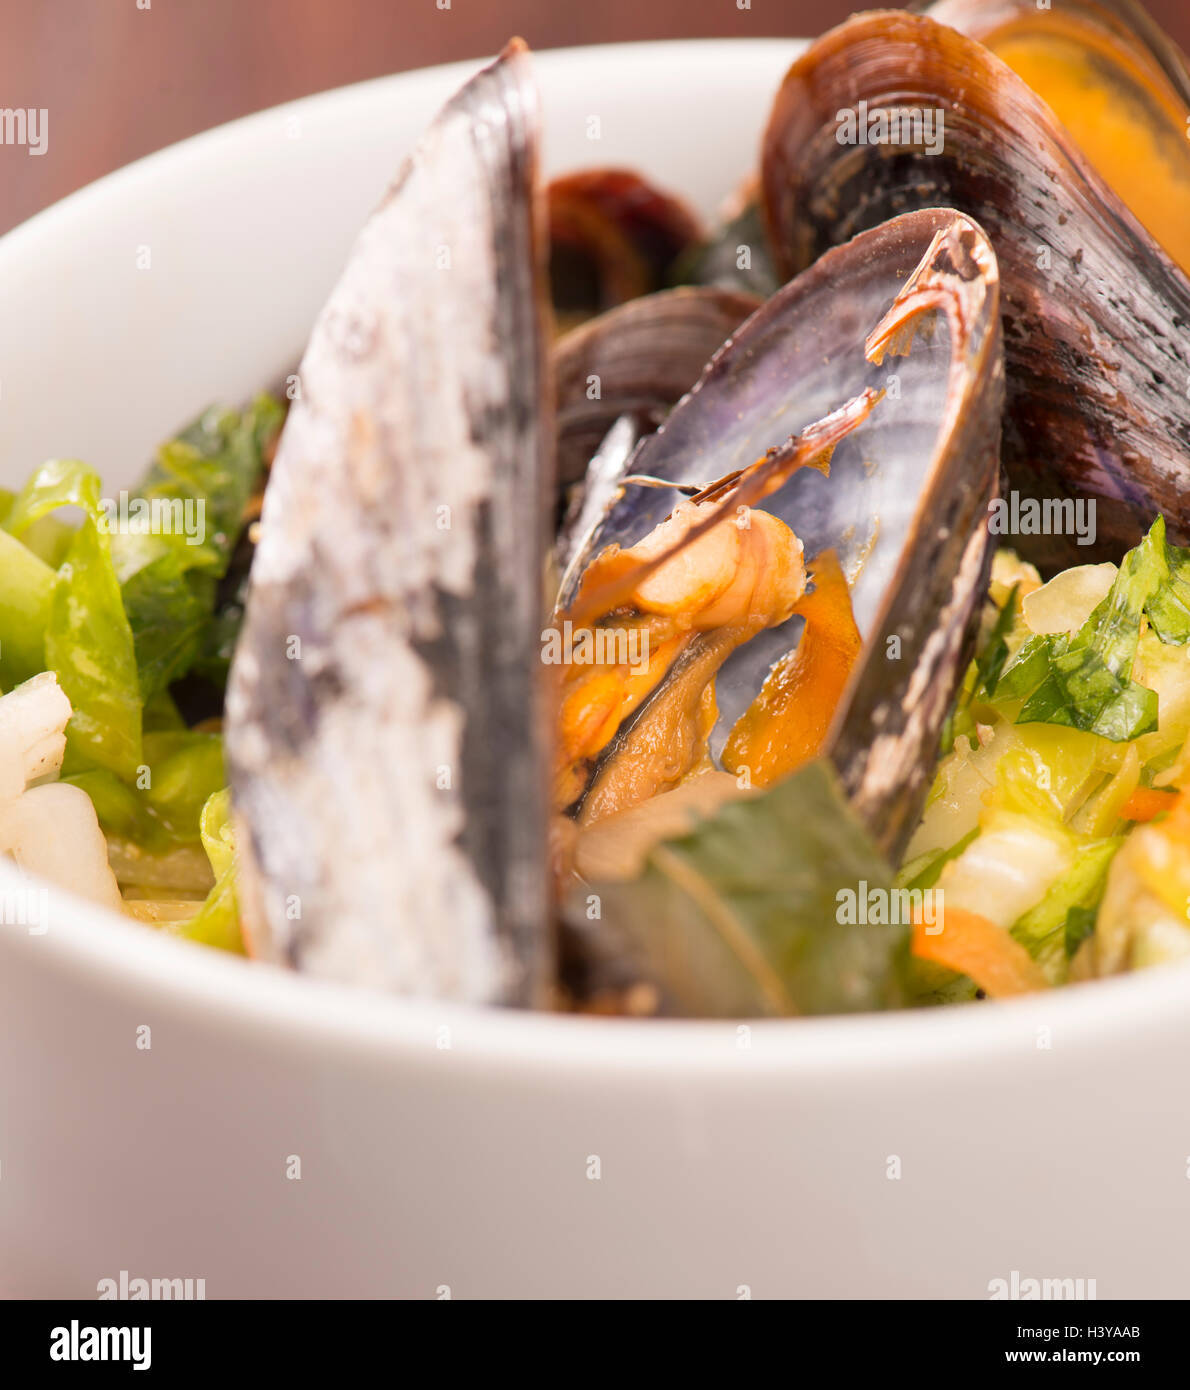 Palourdes grillées avec la salade de chou asiatique. Plat de fruits de mer servi. Dîner gastronomique rustique des crustacés. Banque D'Images